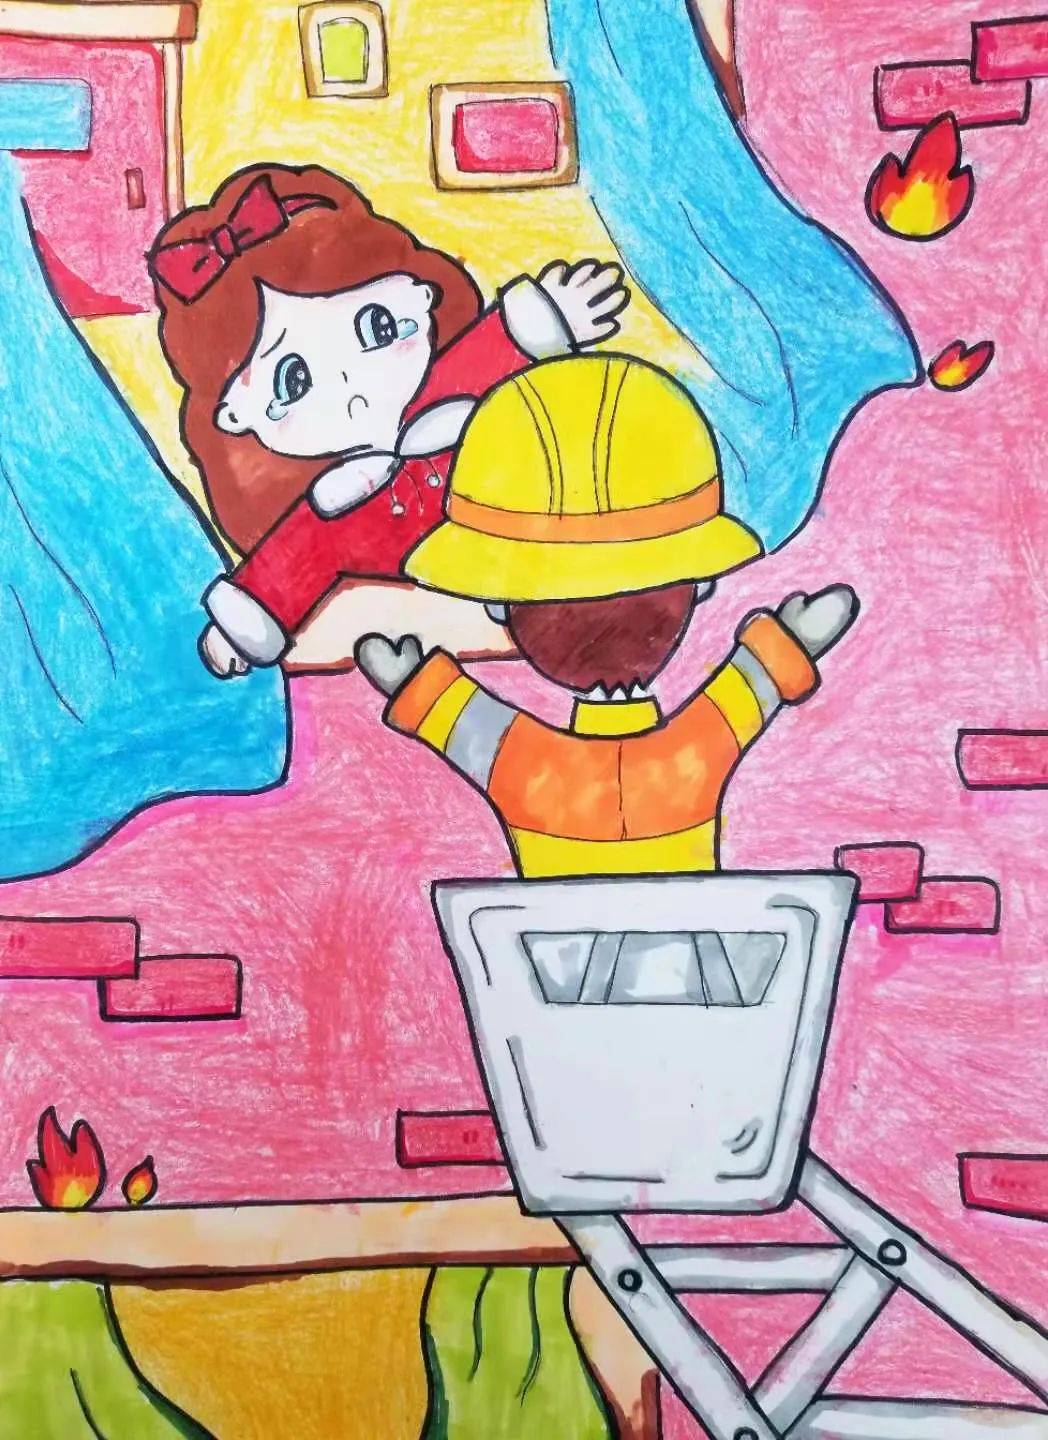 "我是小小消防员"创意绘画 致敬"火焰蓝"